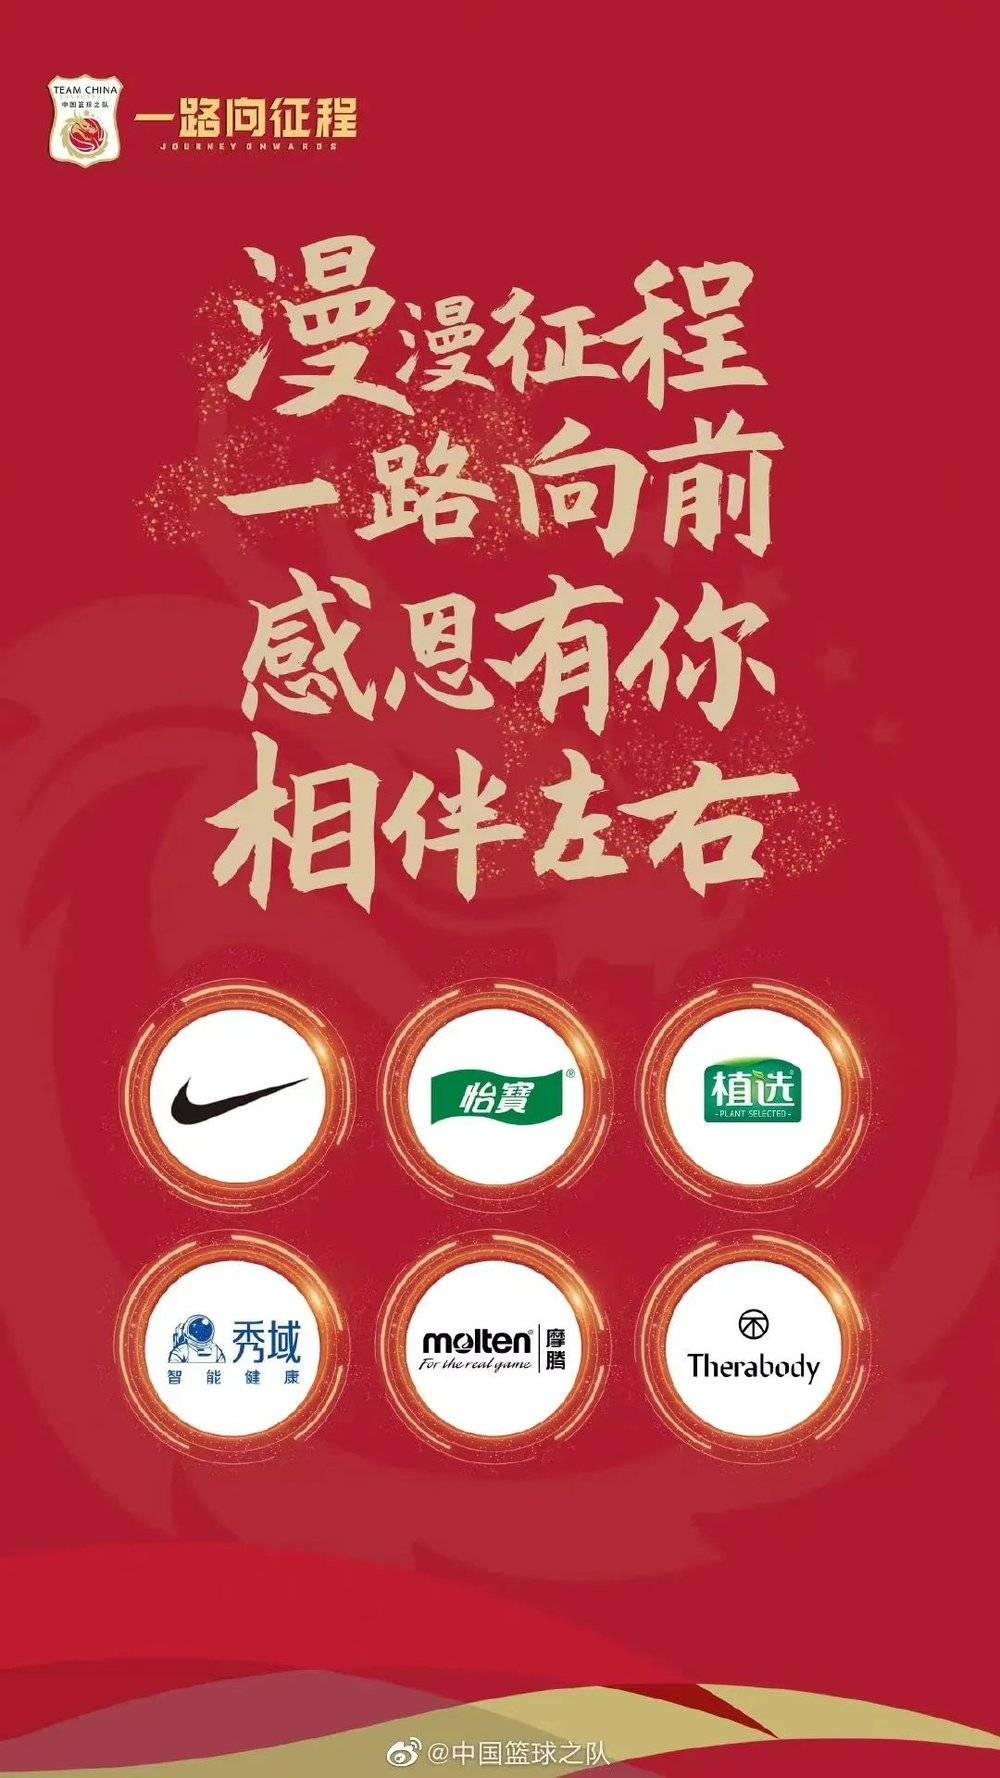 海报中包含了4家中国篮球之队合作伙伴，以及2家中国国家女子篮球队合作伙伴<br>